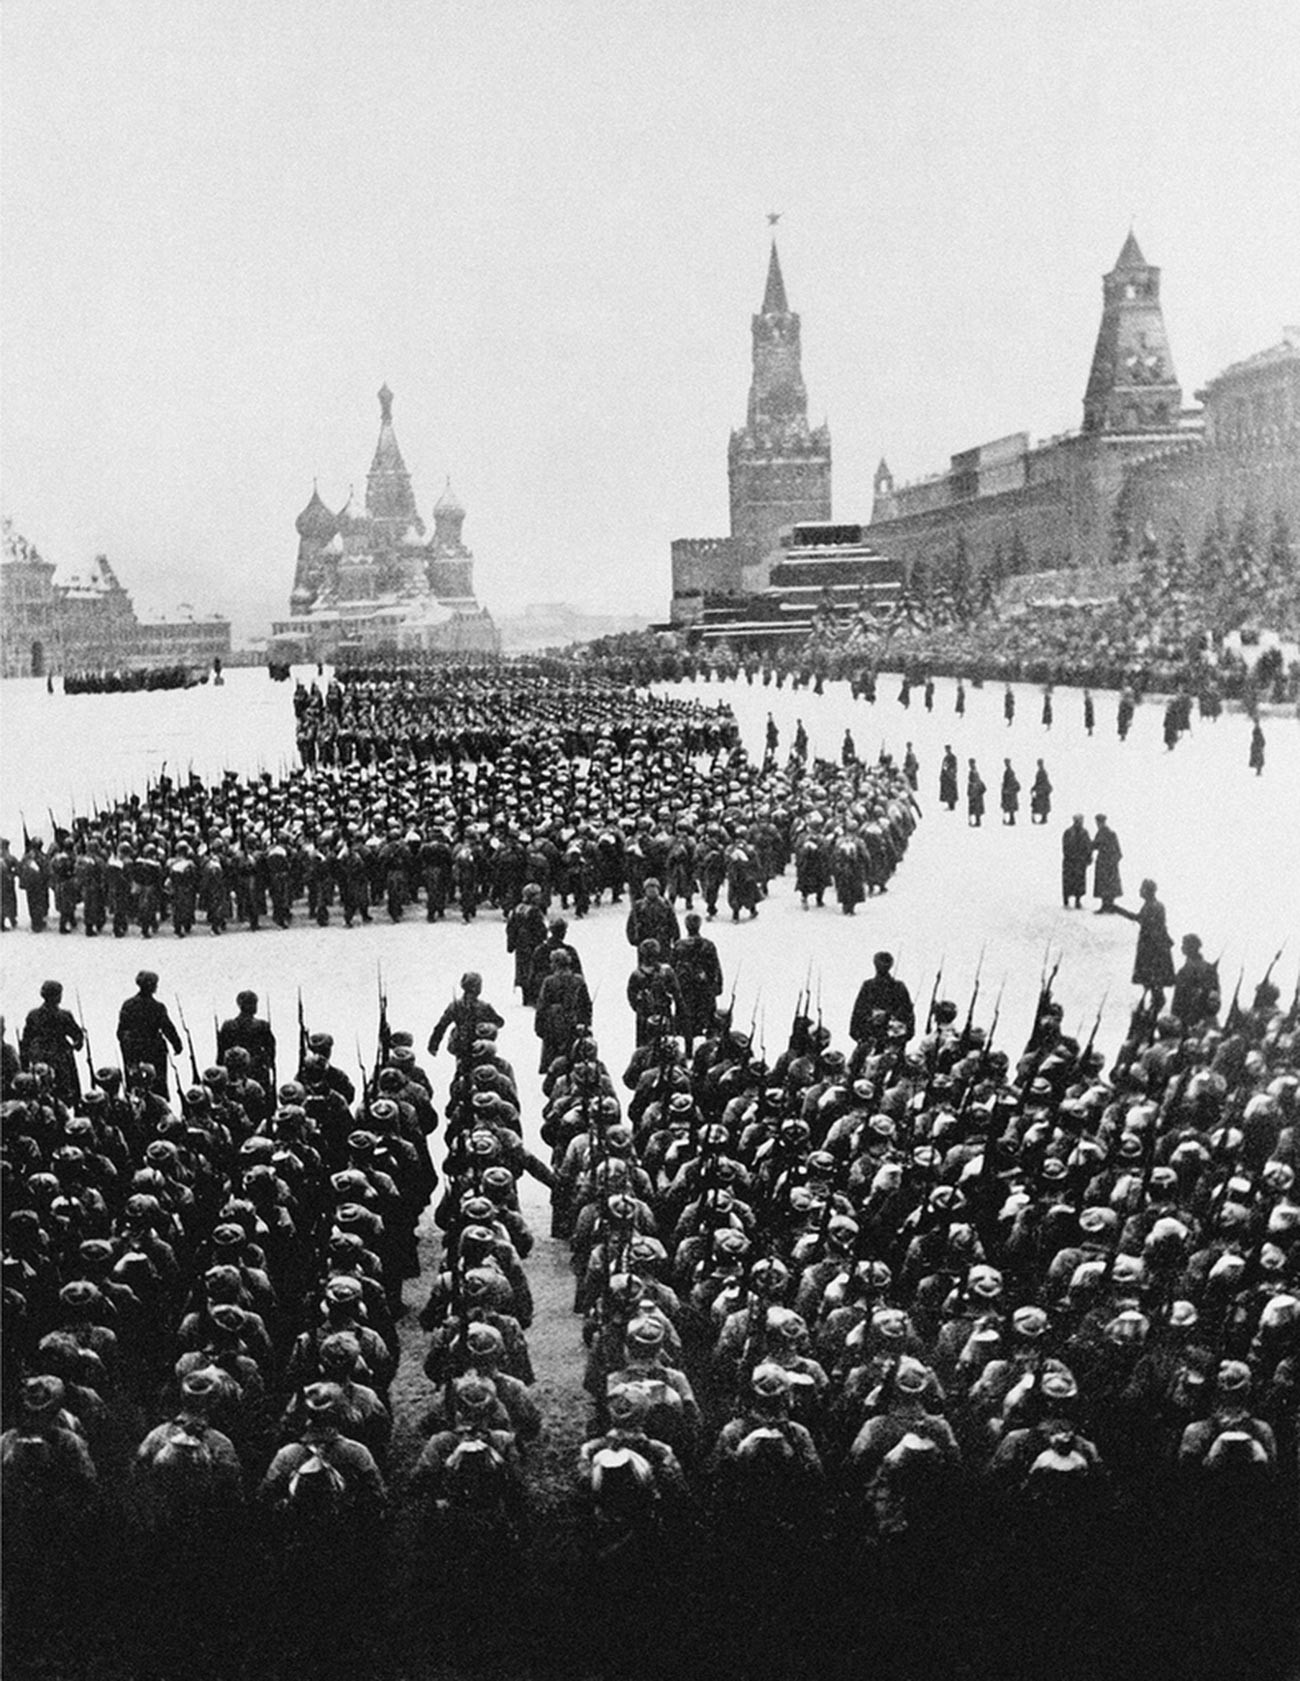 Парад на Красной площади 7 ноября 1941 года.